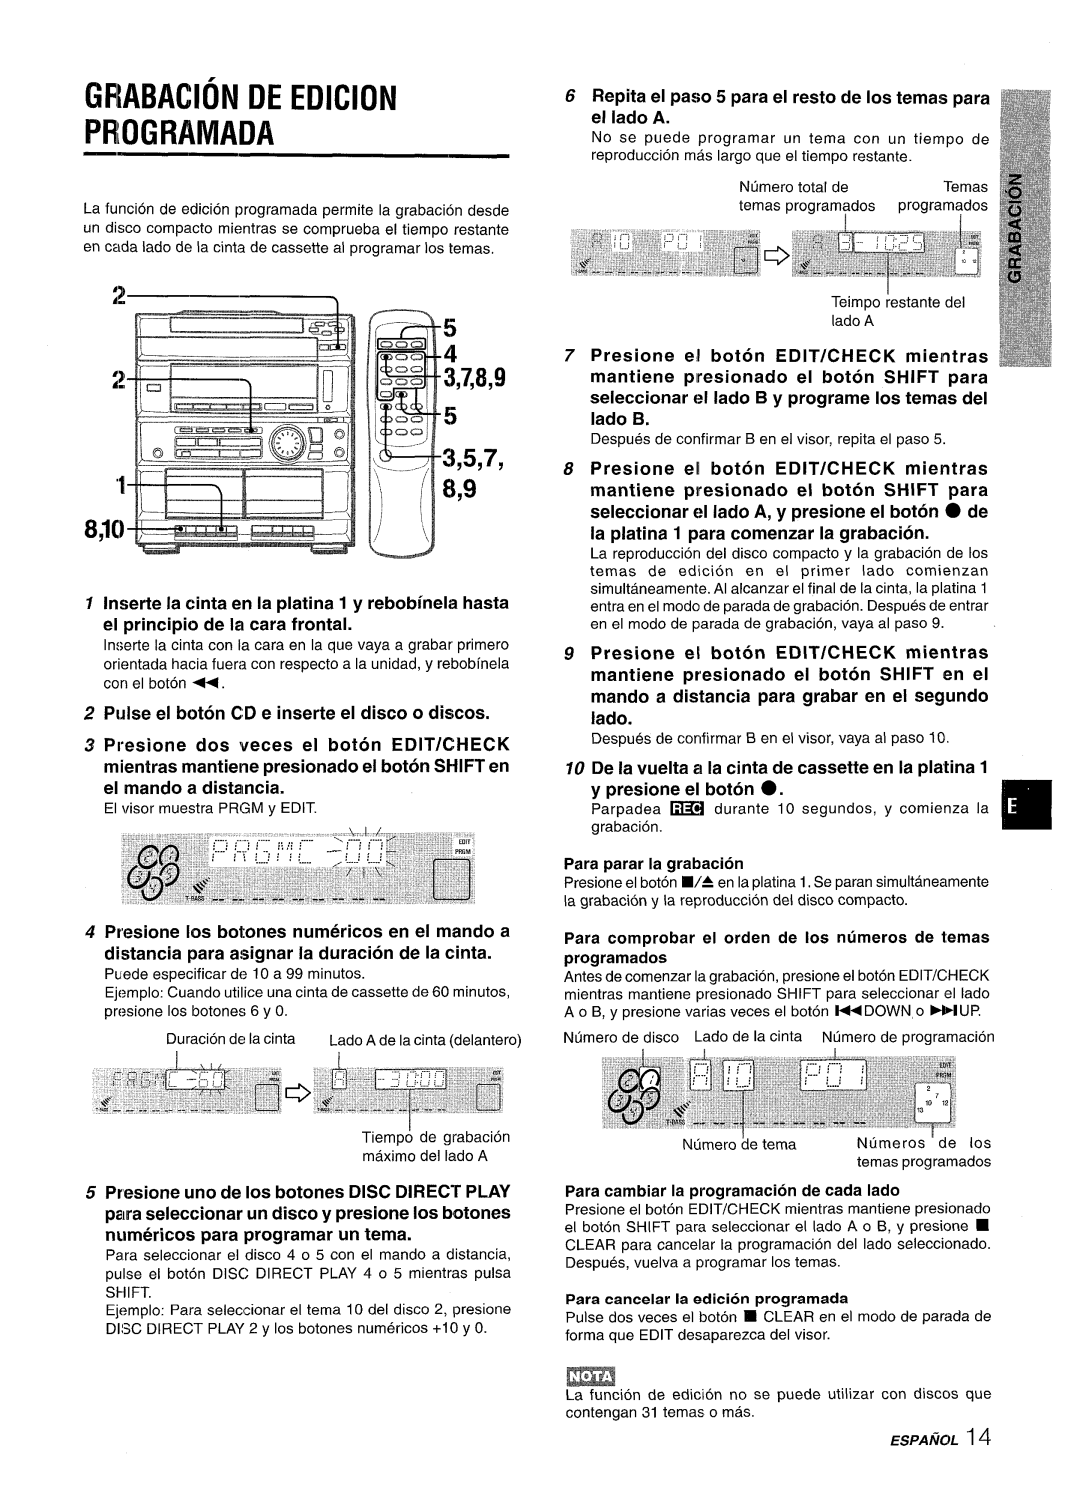 Sony CX-ZR525 manual GRABAC1ON DE EDICION PROGRAMADA, 3,7,8,9, 3,5,7 8,9, Pulse el boton CD e inserte el disco o discos 